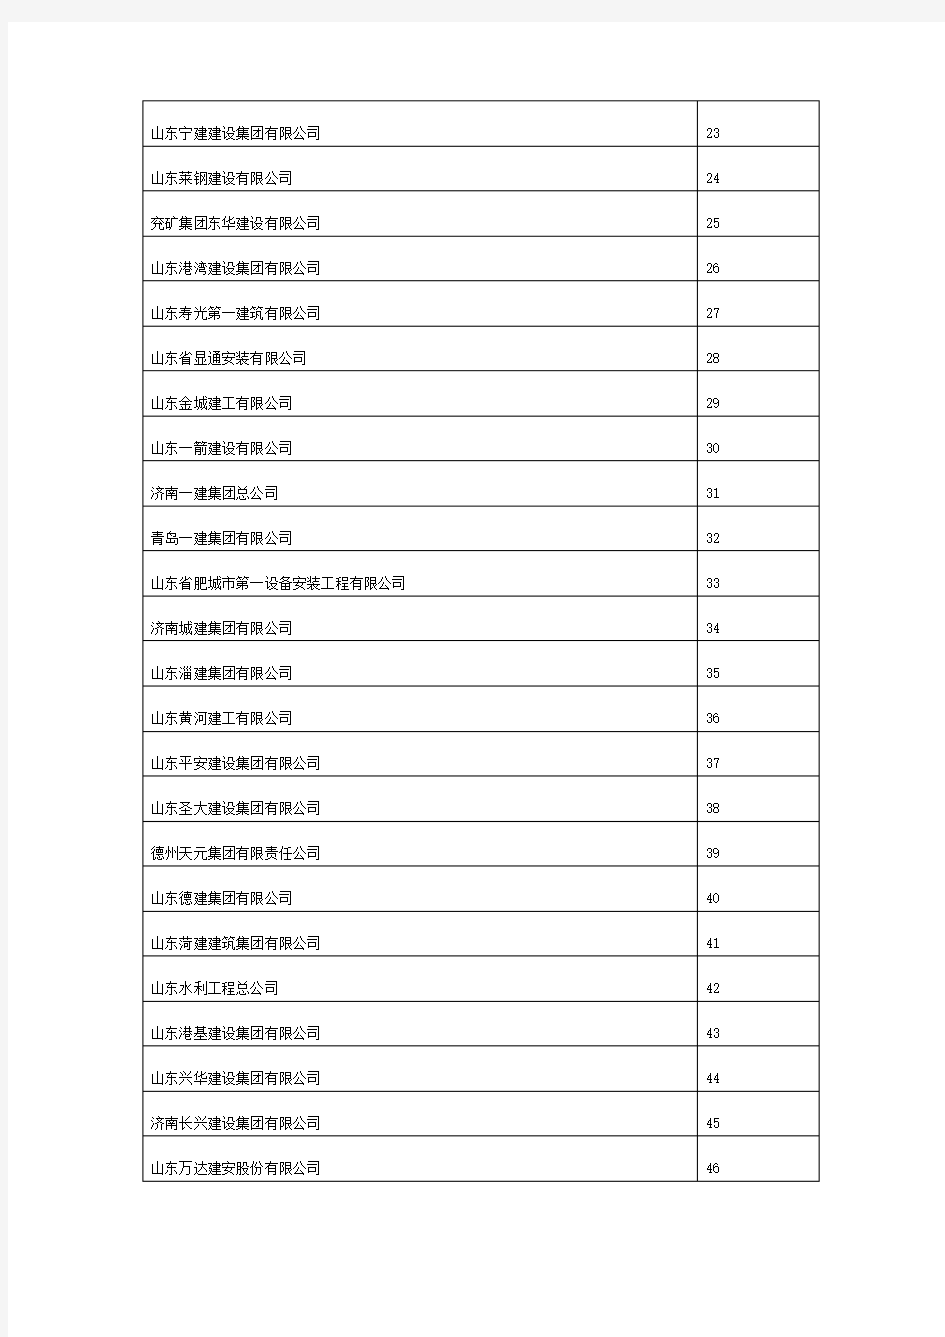 山东省建筑企业综合实力50强名单2012